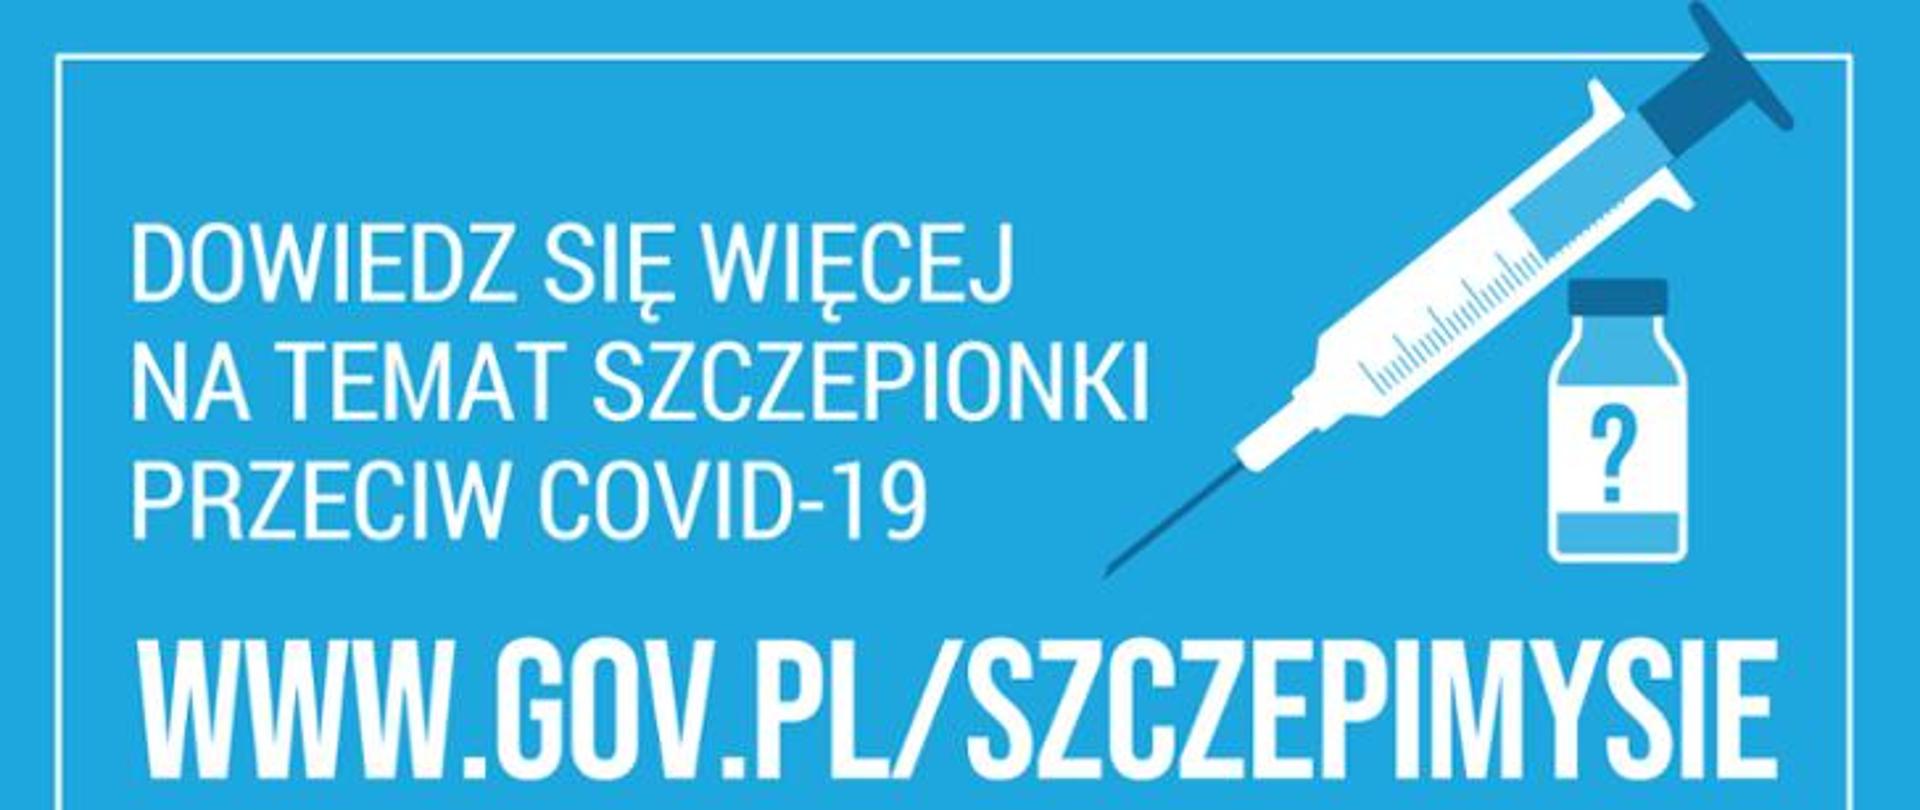 Ulotka promująca stronę internetową www.gov.pl/szczepimysie zawierającą informacje na temat szczepionki na COVID-19